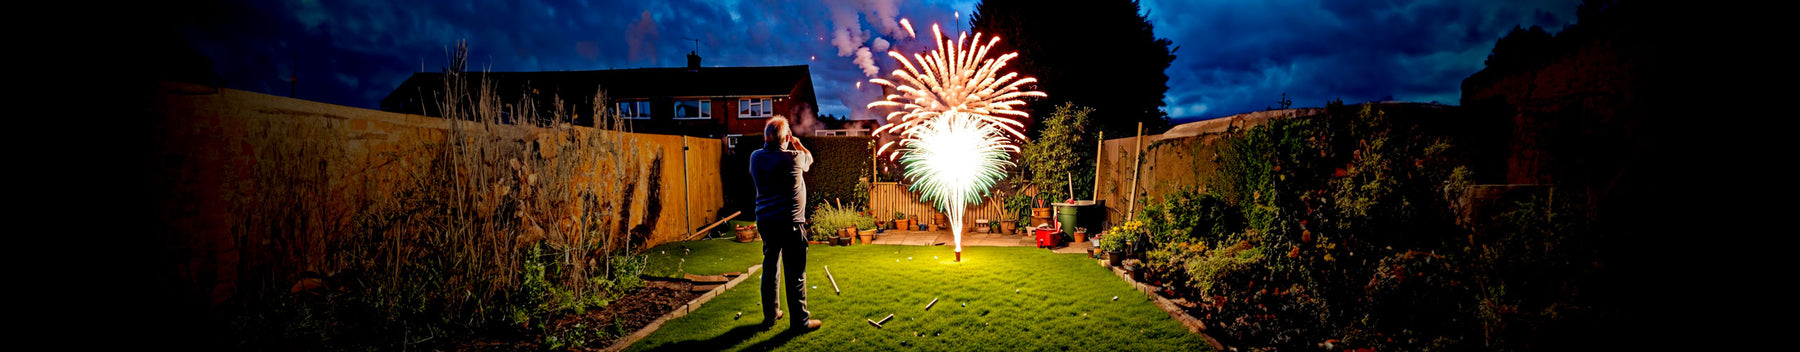 DIY Fireworks: Making Safe and Legal Home Displays